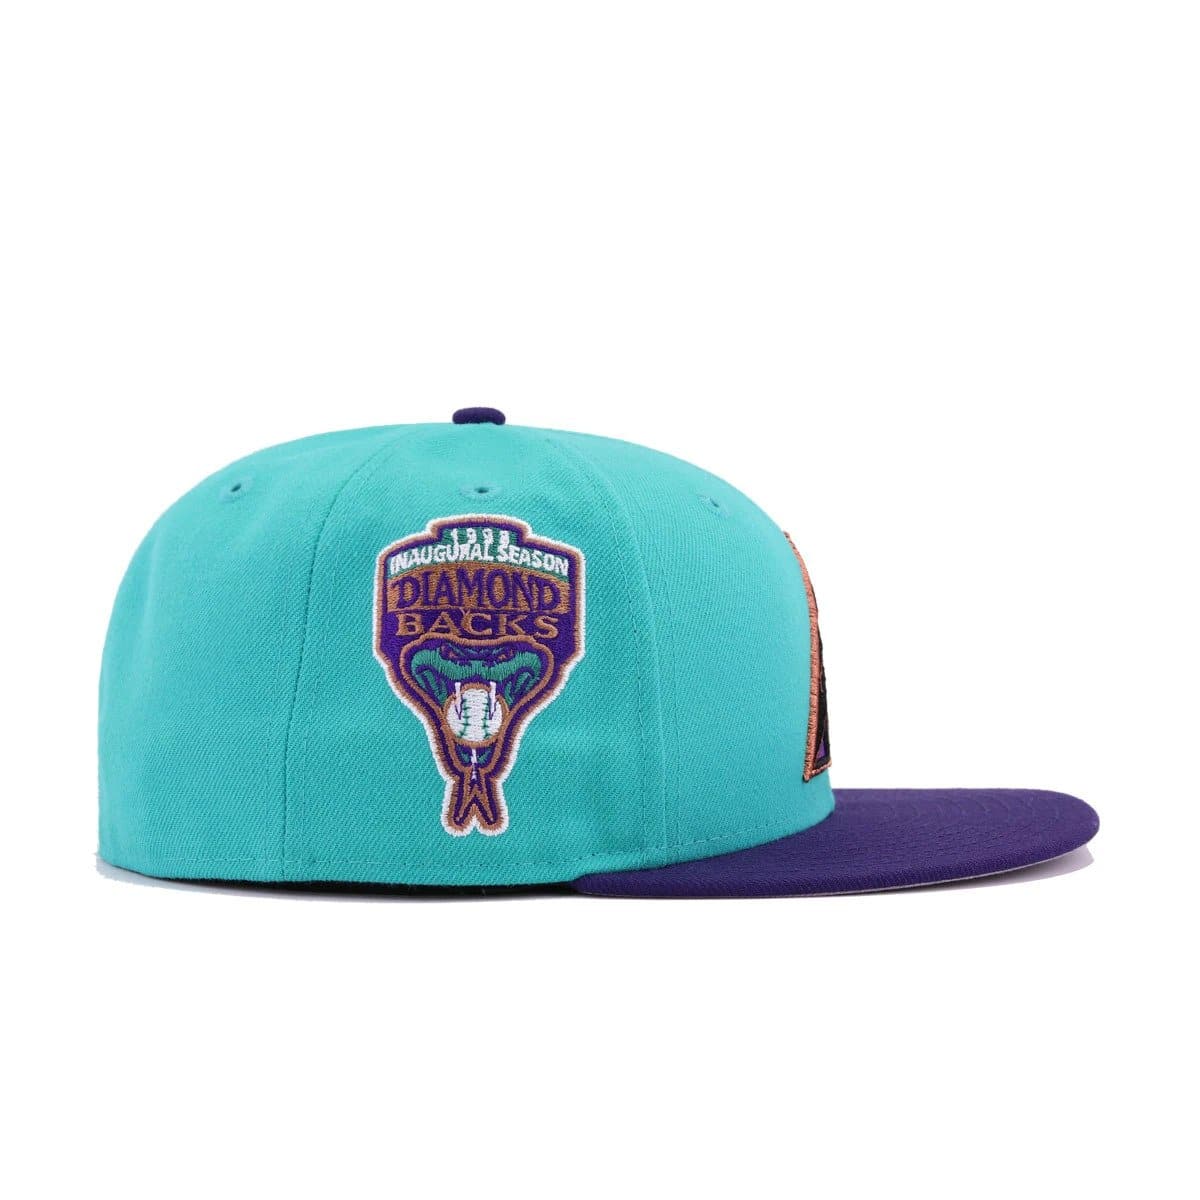 New Era Arizona Diamondbacks Teal & Purple Fitted Hat w/ Air Jordan G